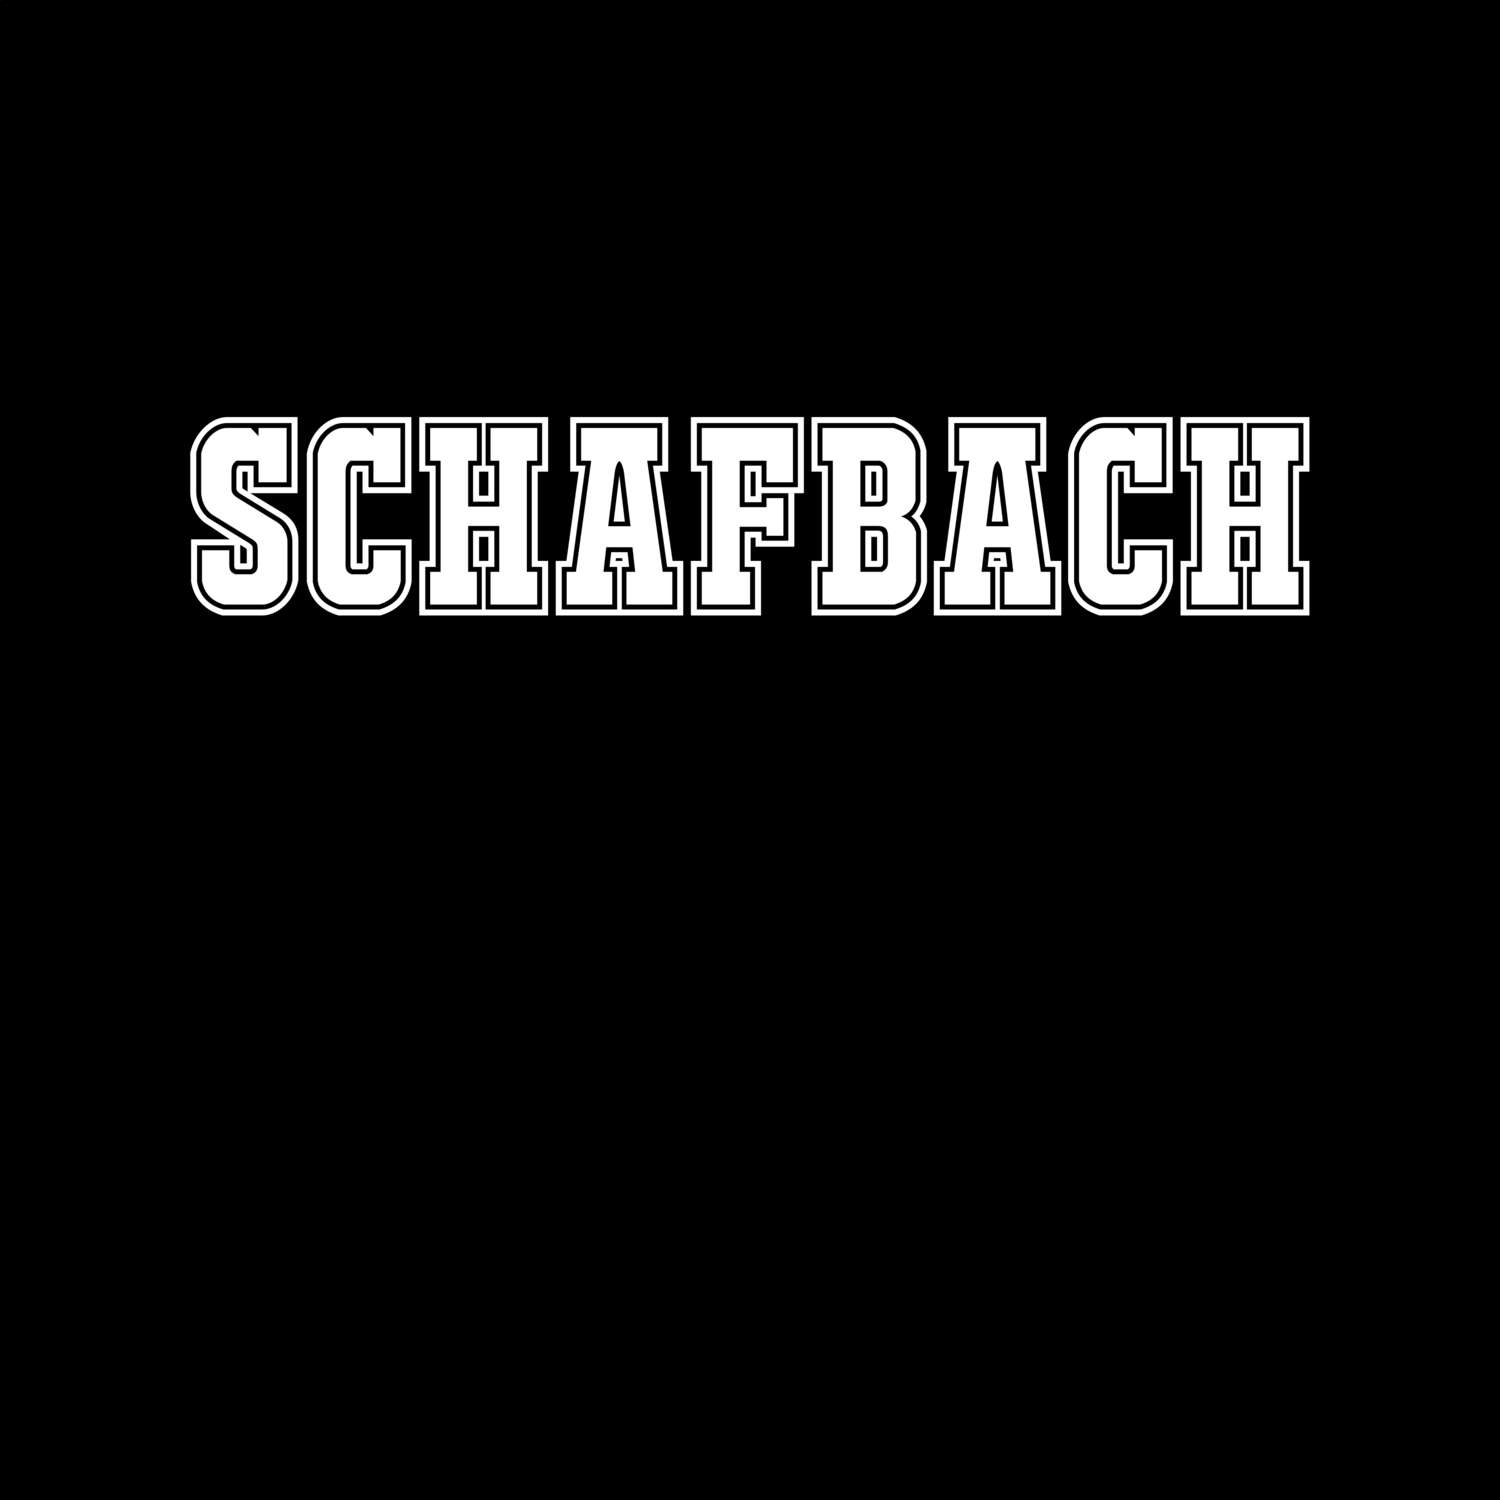 Schafbach T-Shirt »Classic«